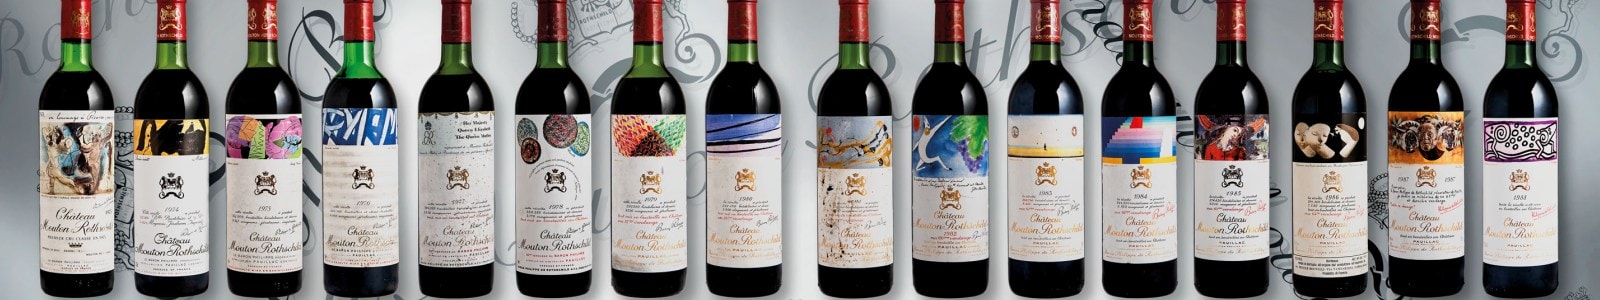 Vins fins et rares avec des vins provenant directement de Grandi Cru D'Italia Estates